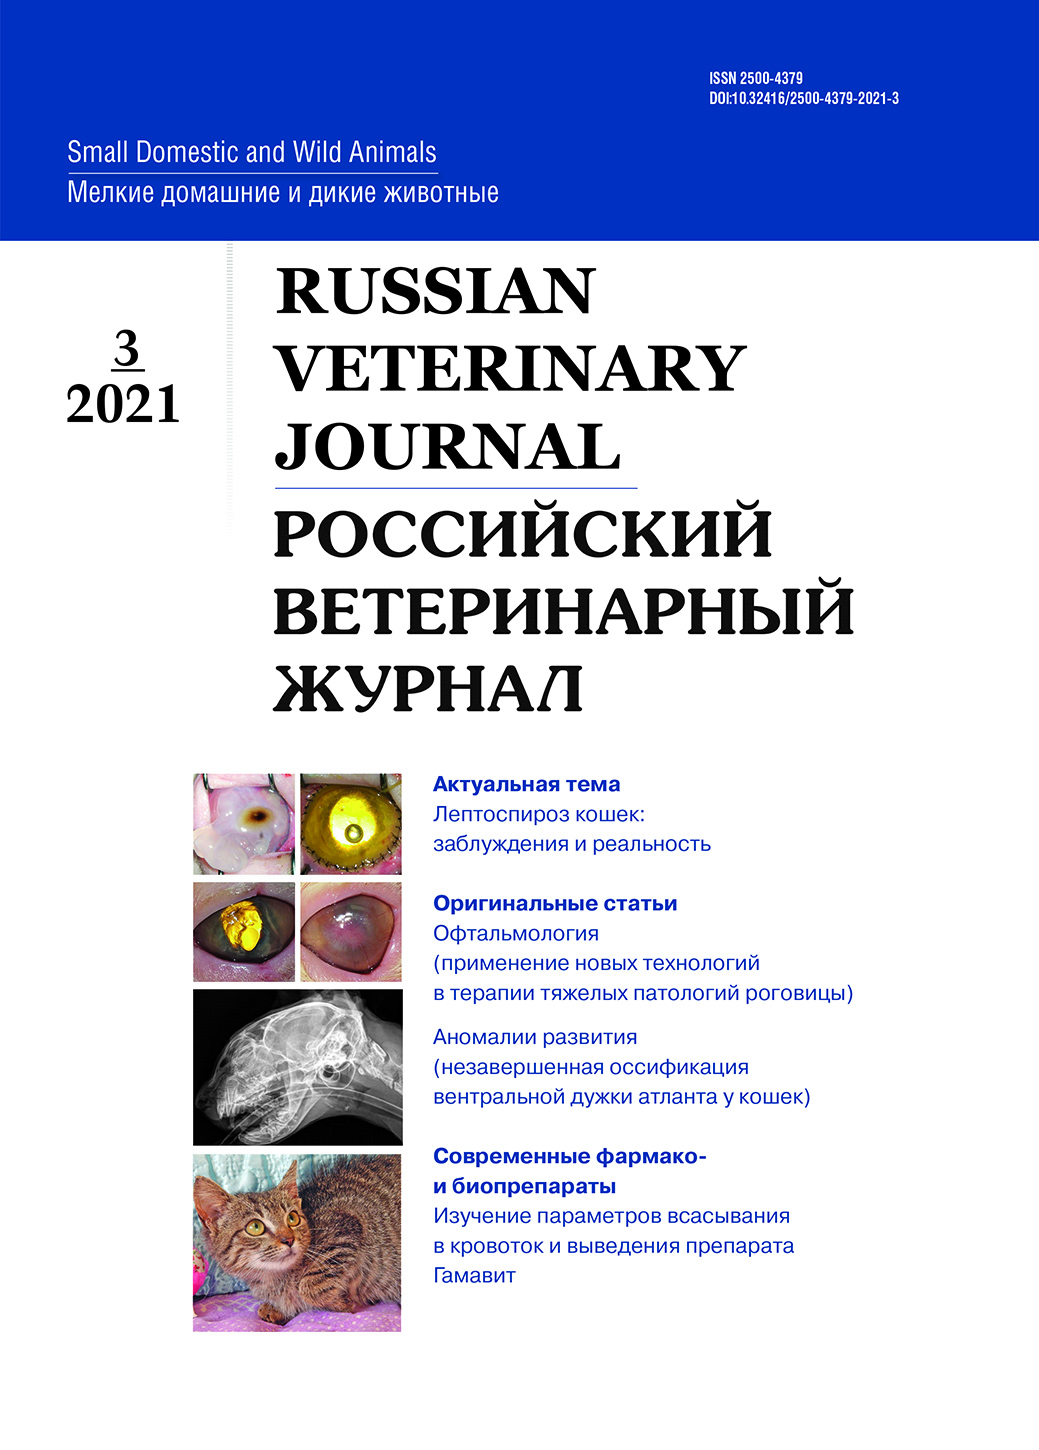                         Russian veterinary journal
            